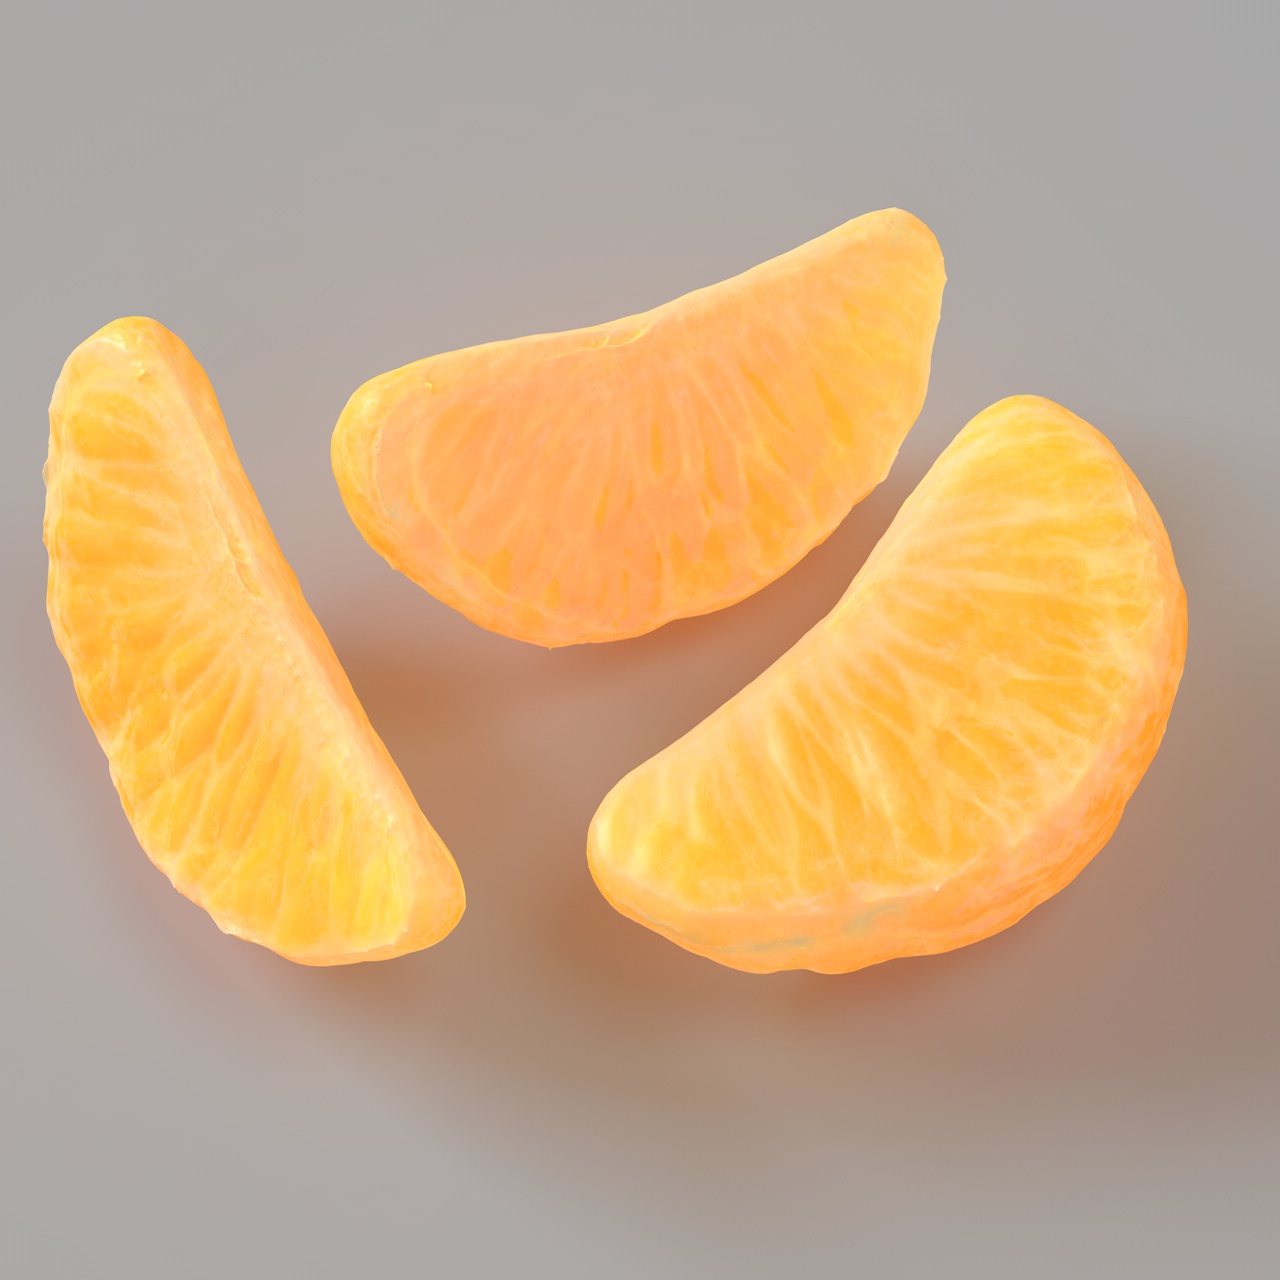 Tangerine Slice model 3D